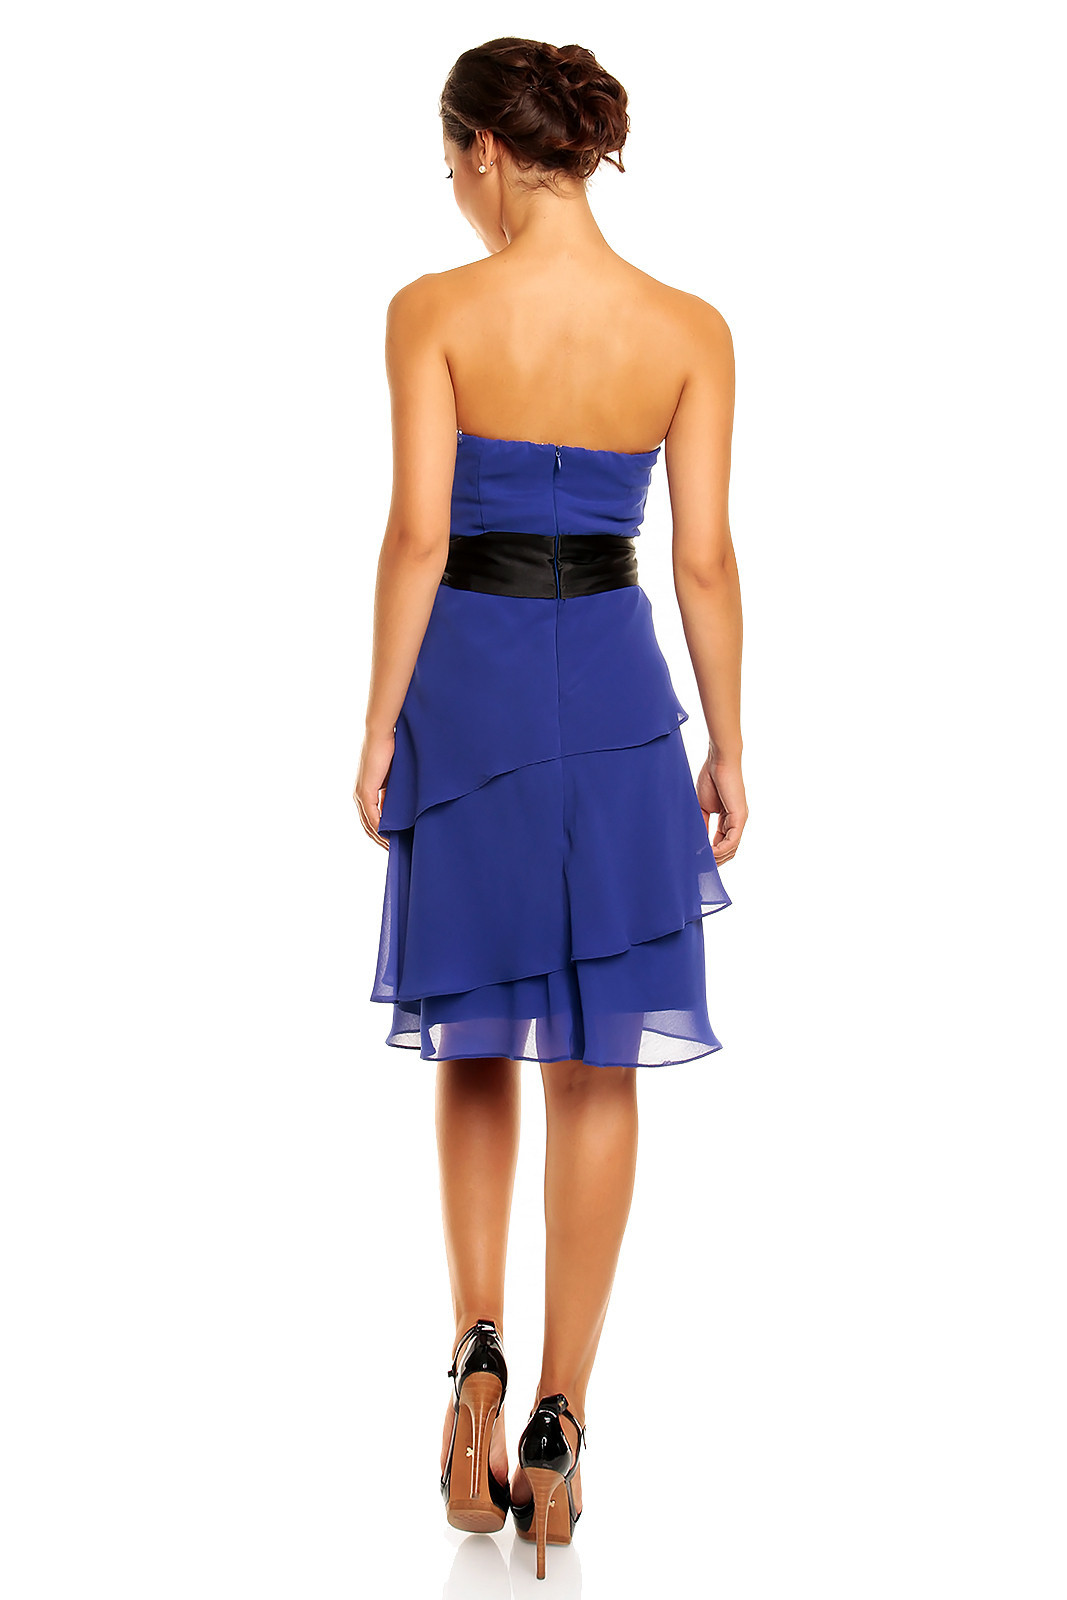 Společenské šaty korzetové značkové MAYAADI s mašlí a sukní s volány modré - Modrá - MAYAADI XL